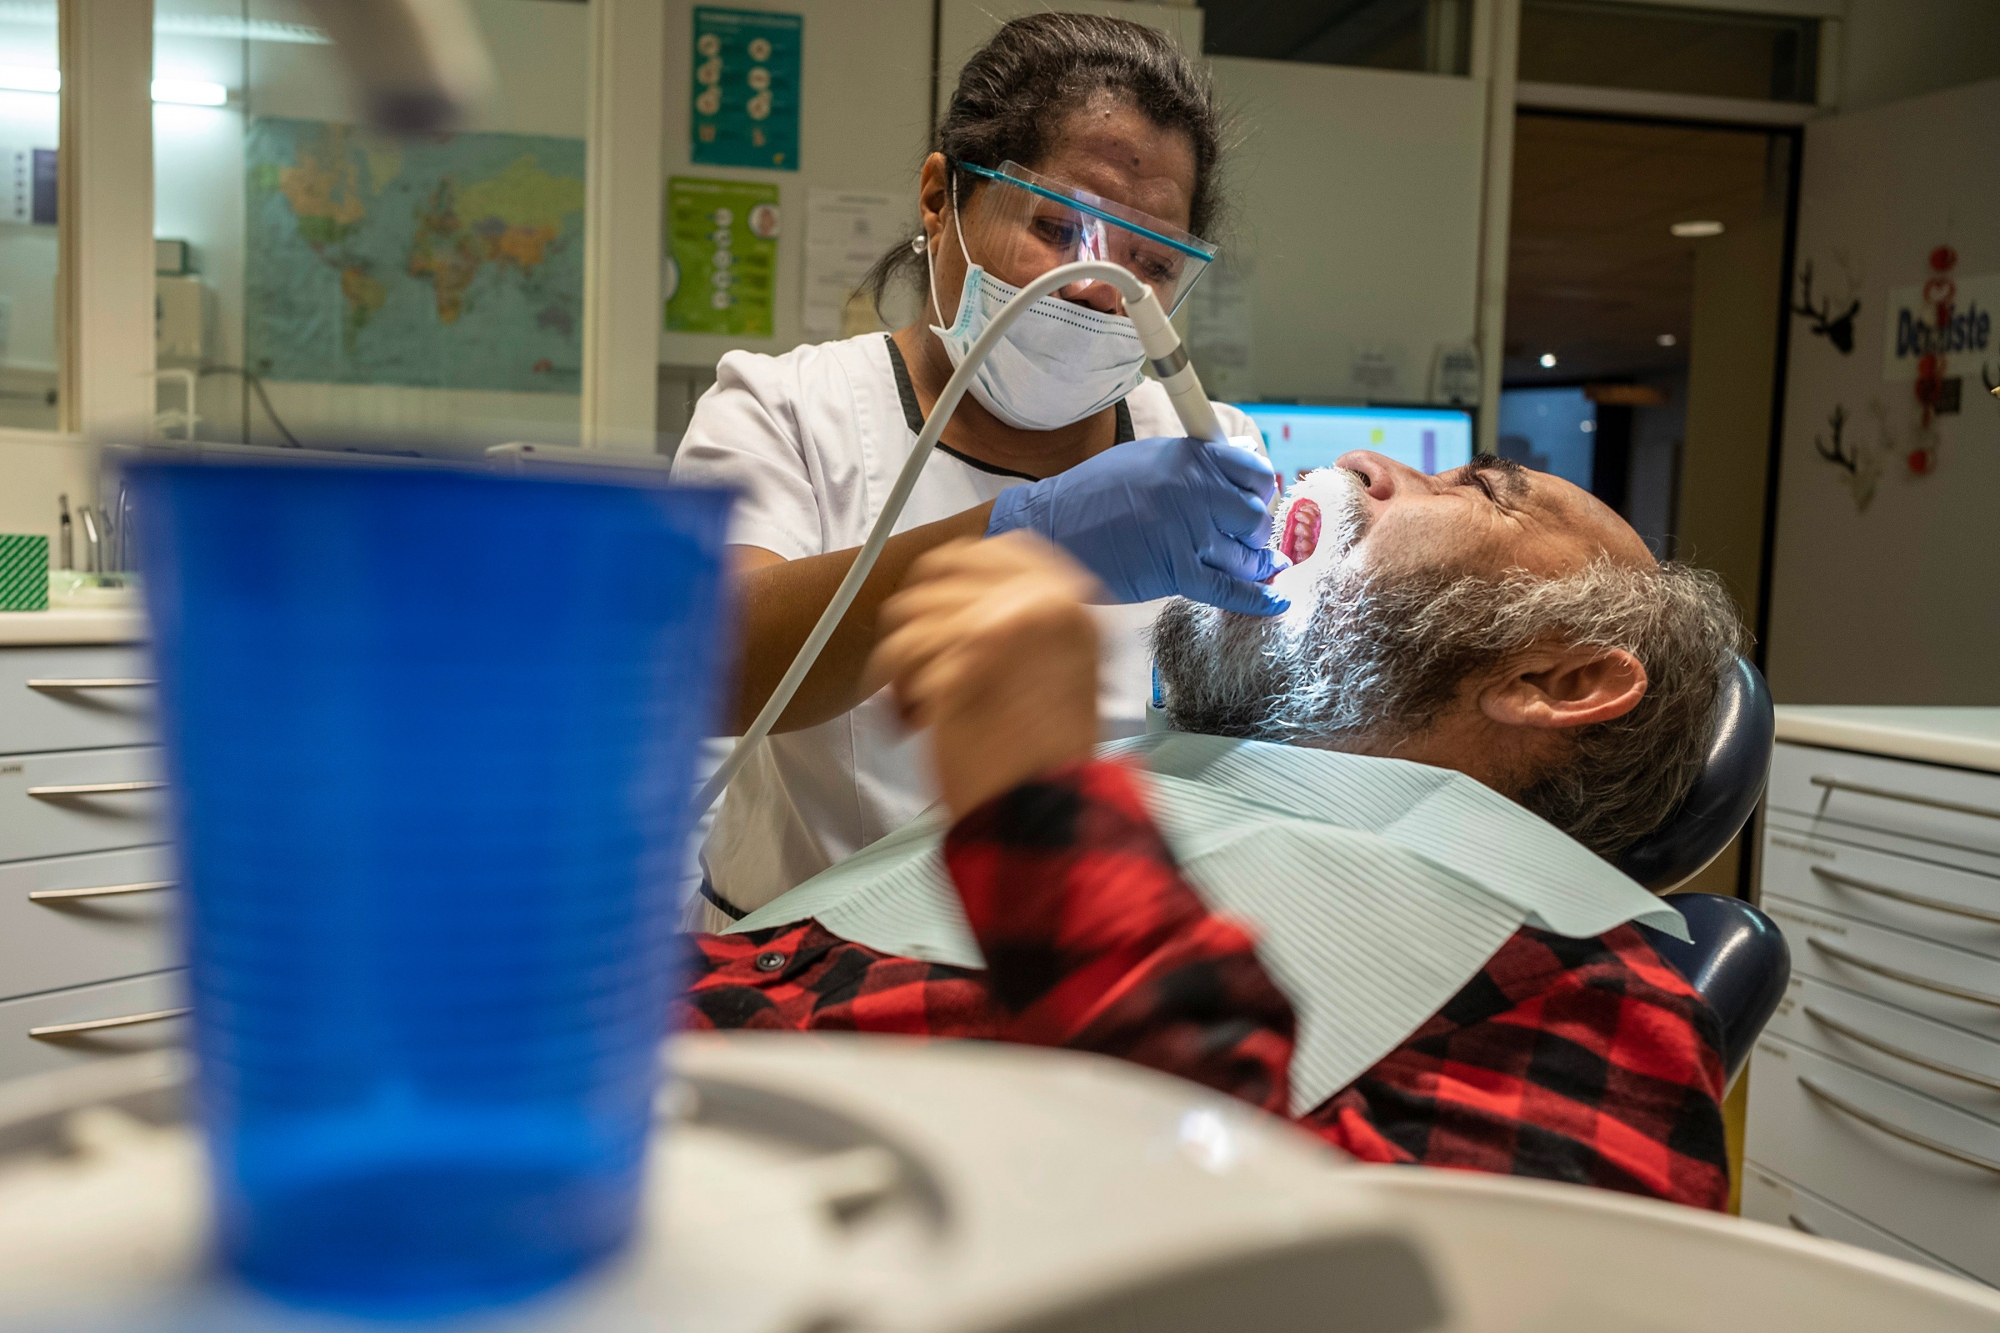 Cabinet de dentiste au Point d'Eau a Lausanne, jeudi 20 decembre 2018.   ARC jean-Bernard Sieber